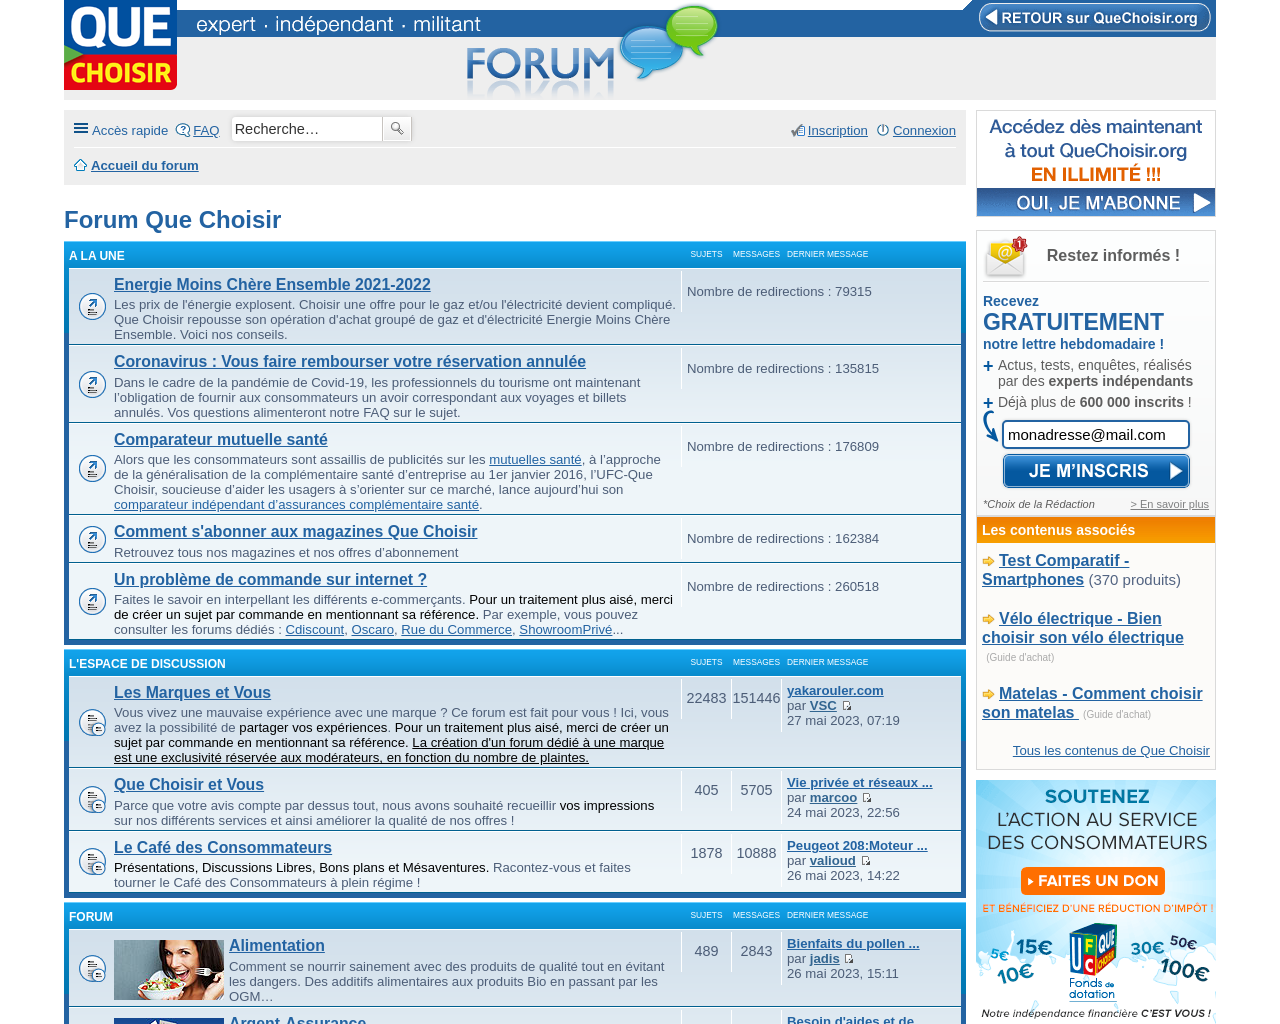 forum.quechoisir.org